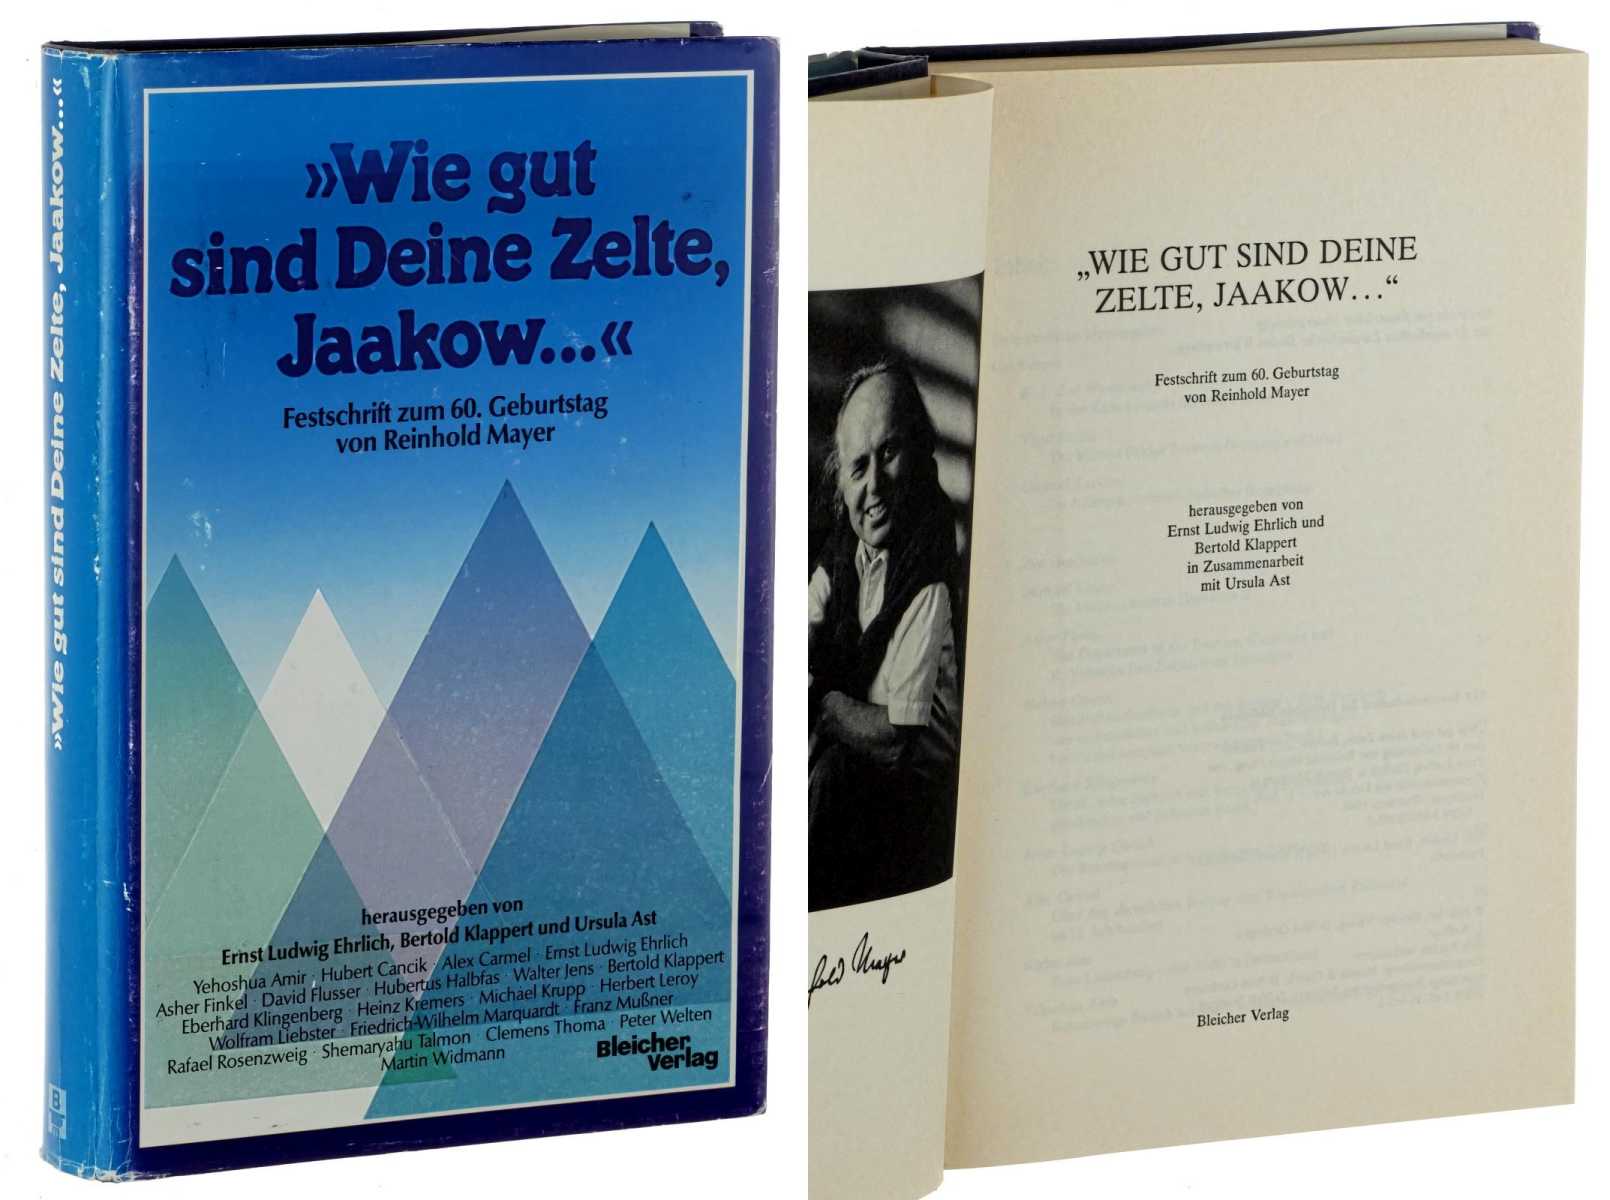   Wie gut sind deine Zelte, Jaakow .... Festschrift zum 60. Geburtstag von Reinhold Mayer. 